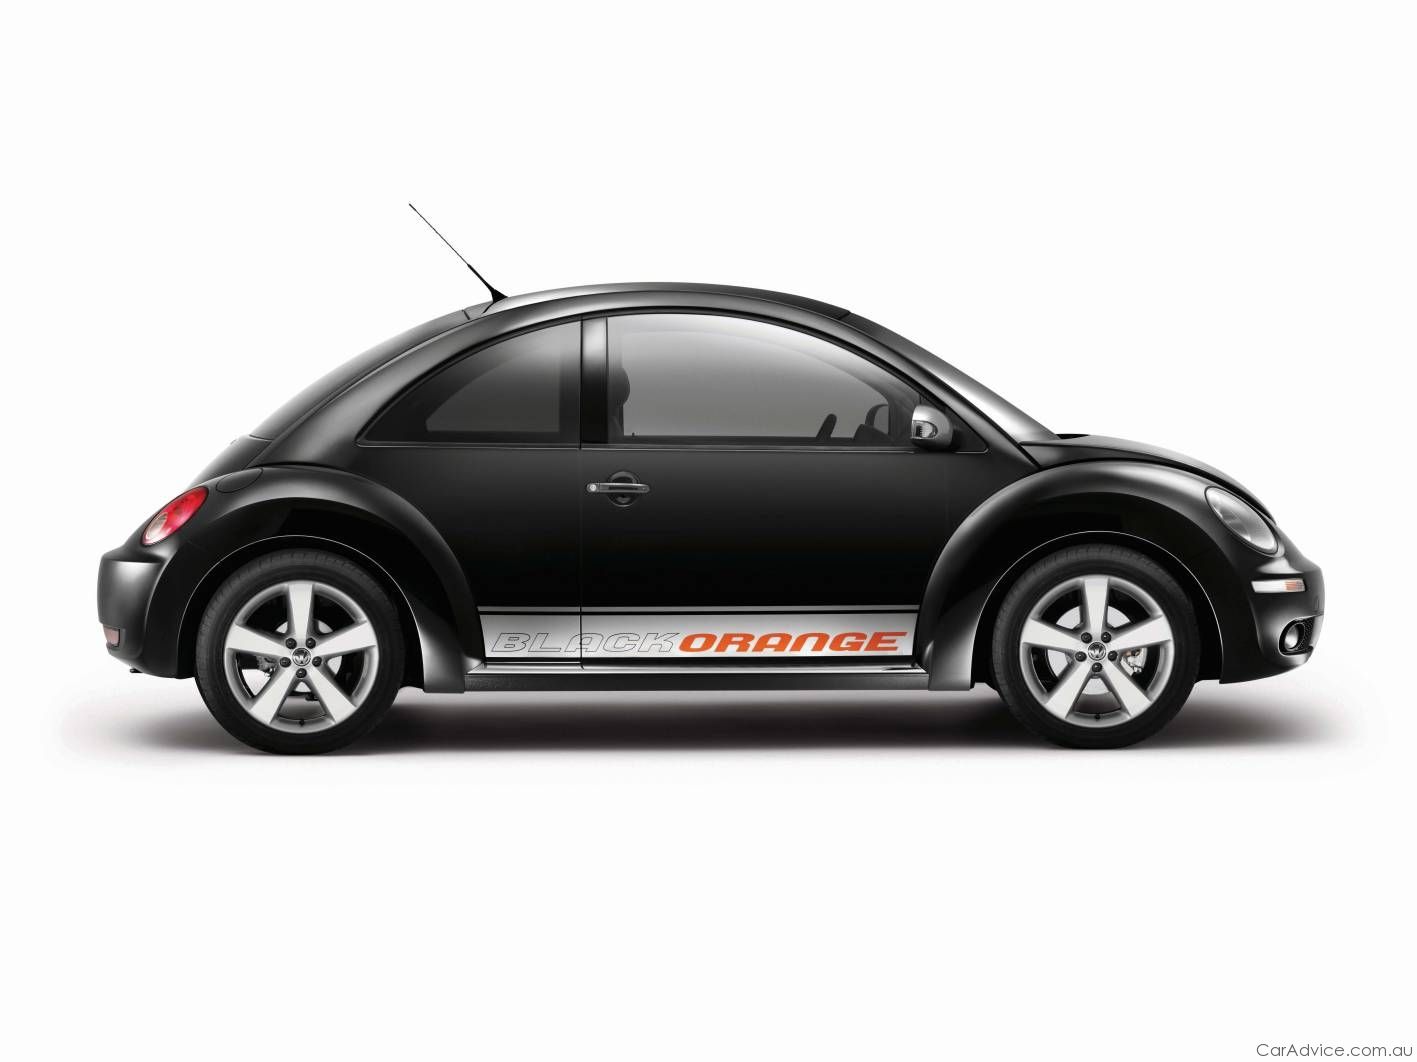 2010 Volkswagen New Beetle BlackOrange